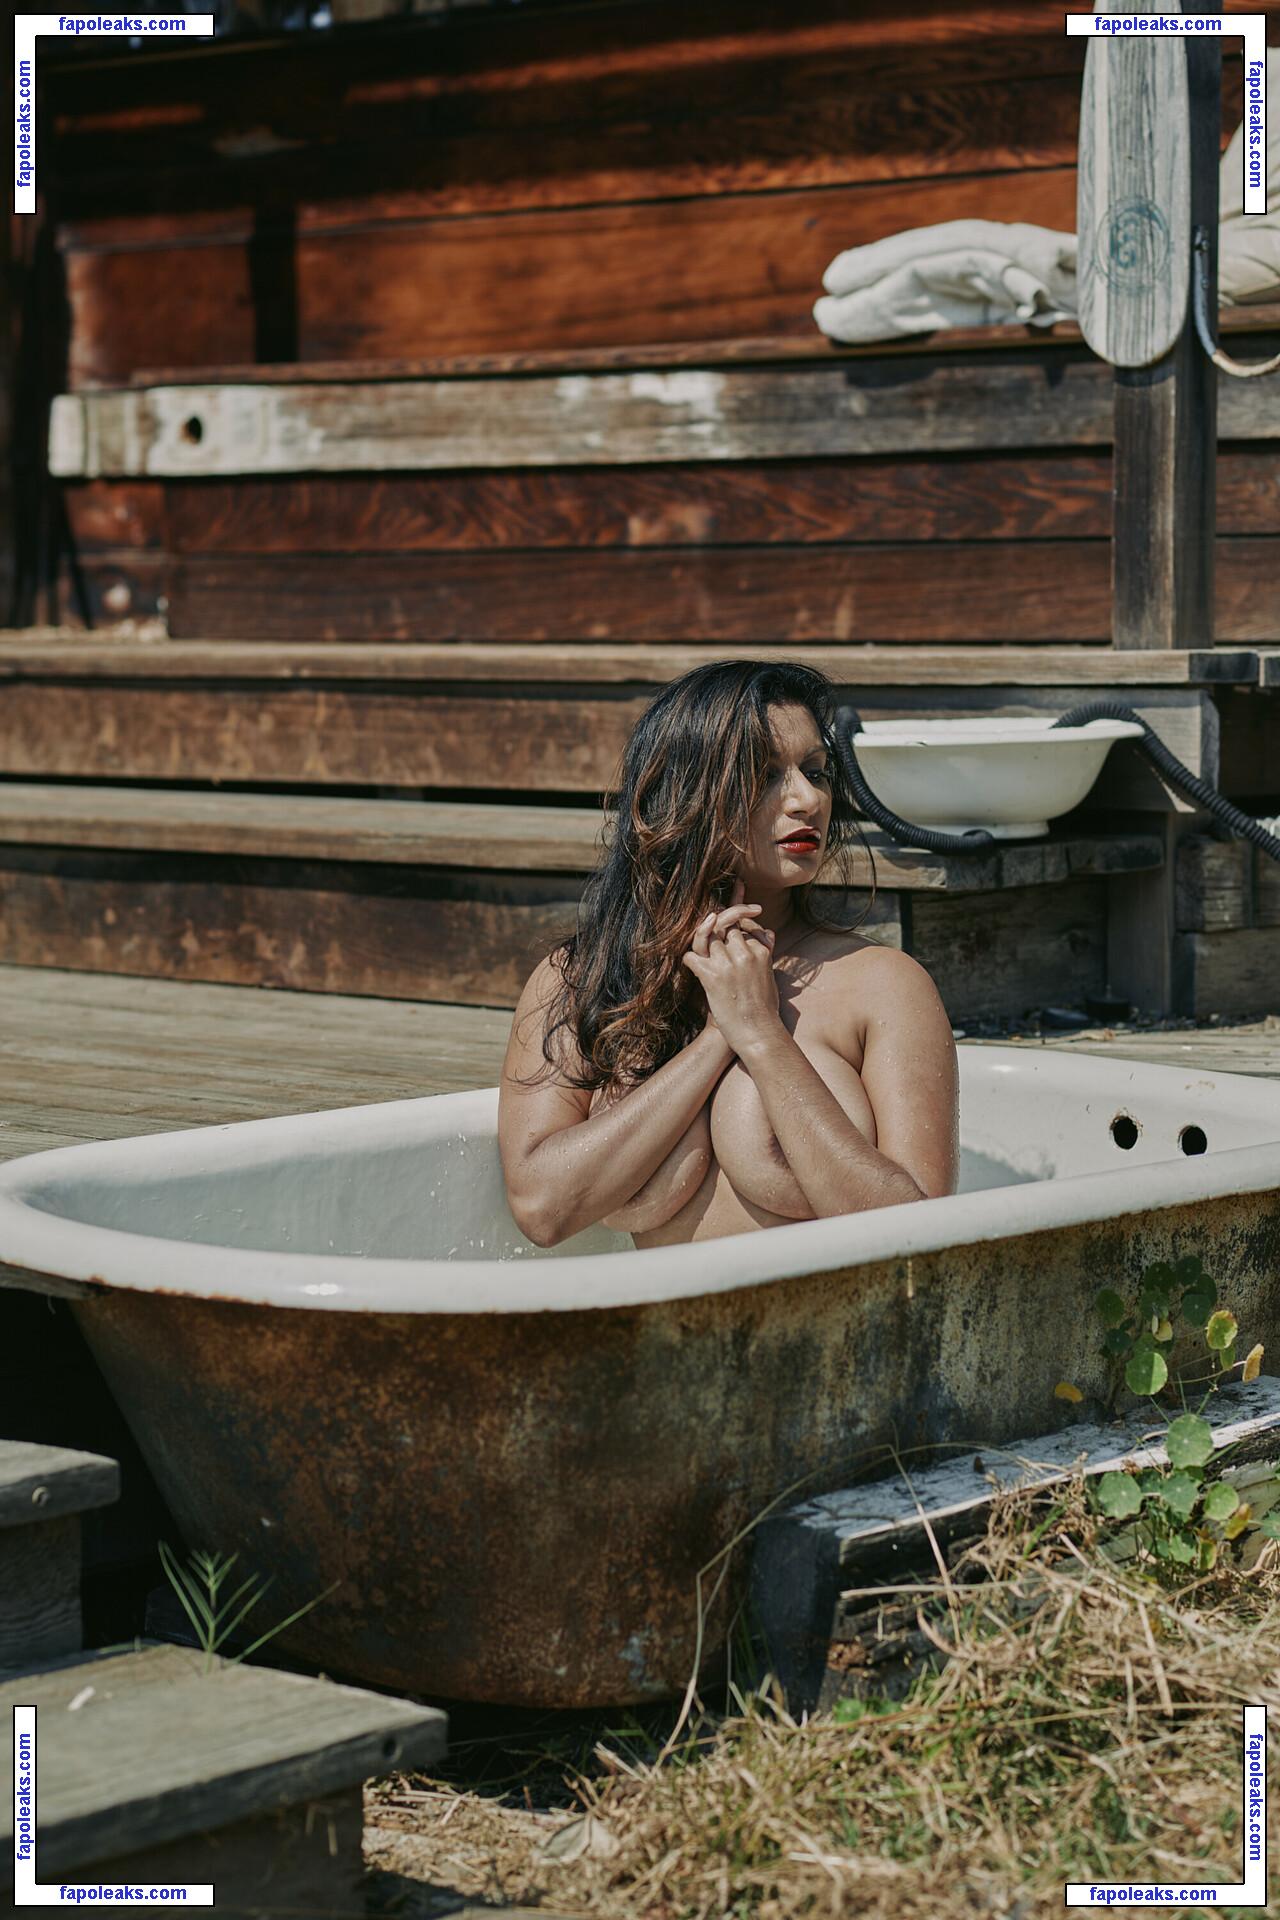 Dakini / Carla White / Devi / googlymonstor nude photo #0005 from OnlyFans